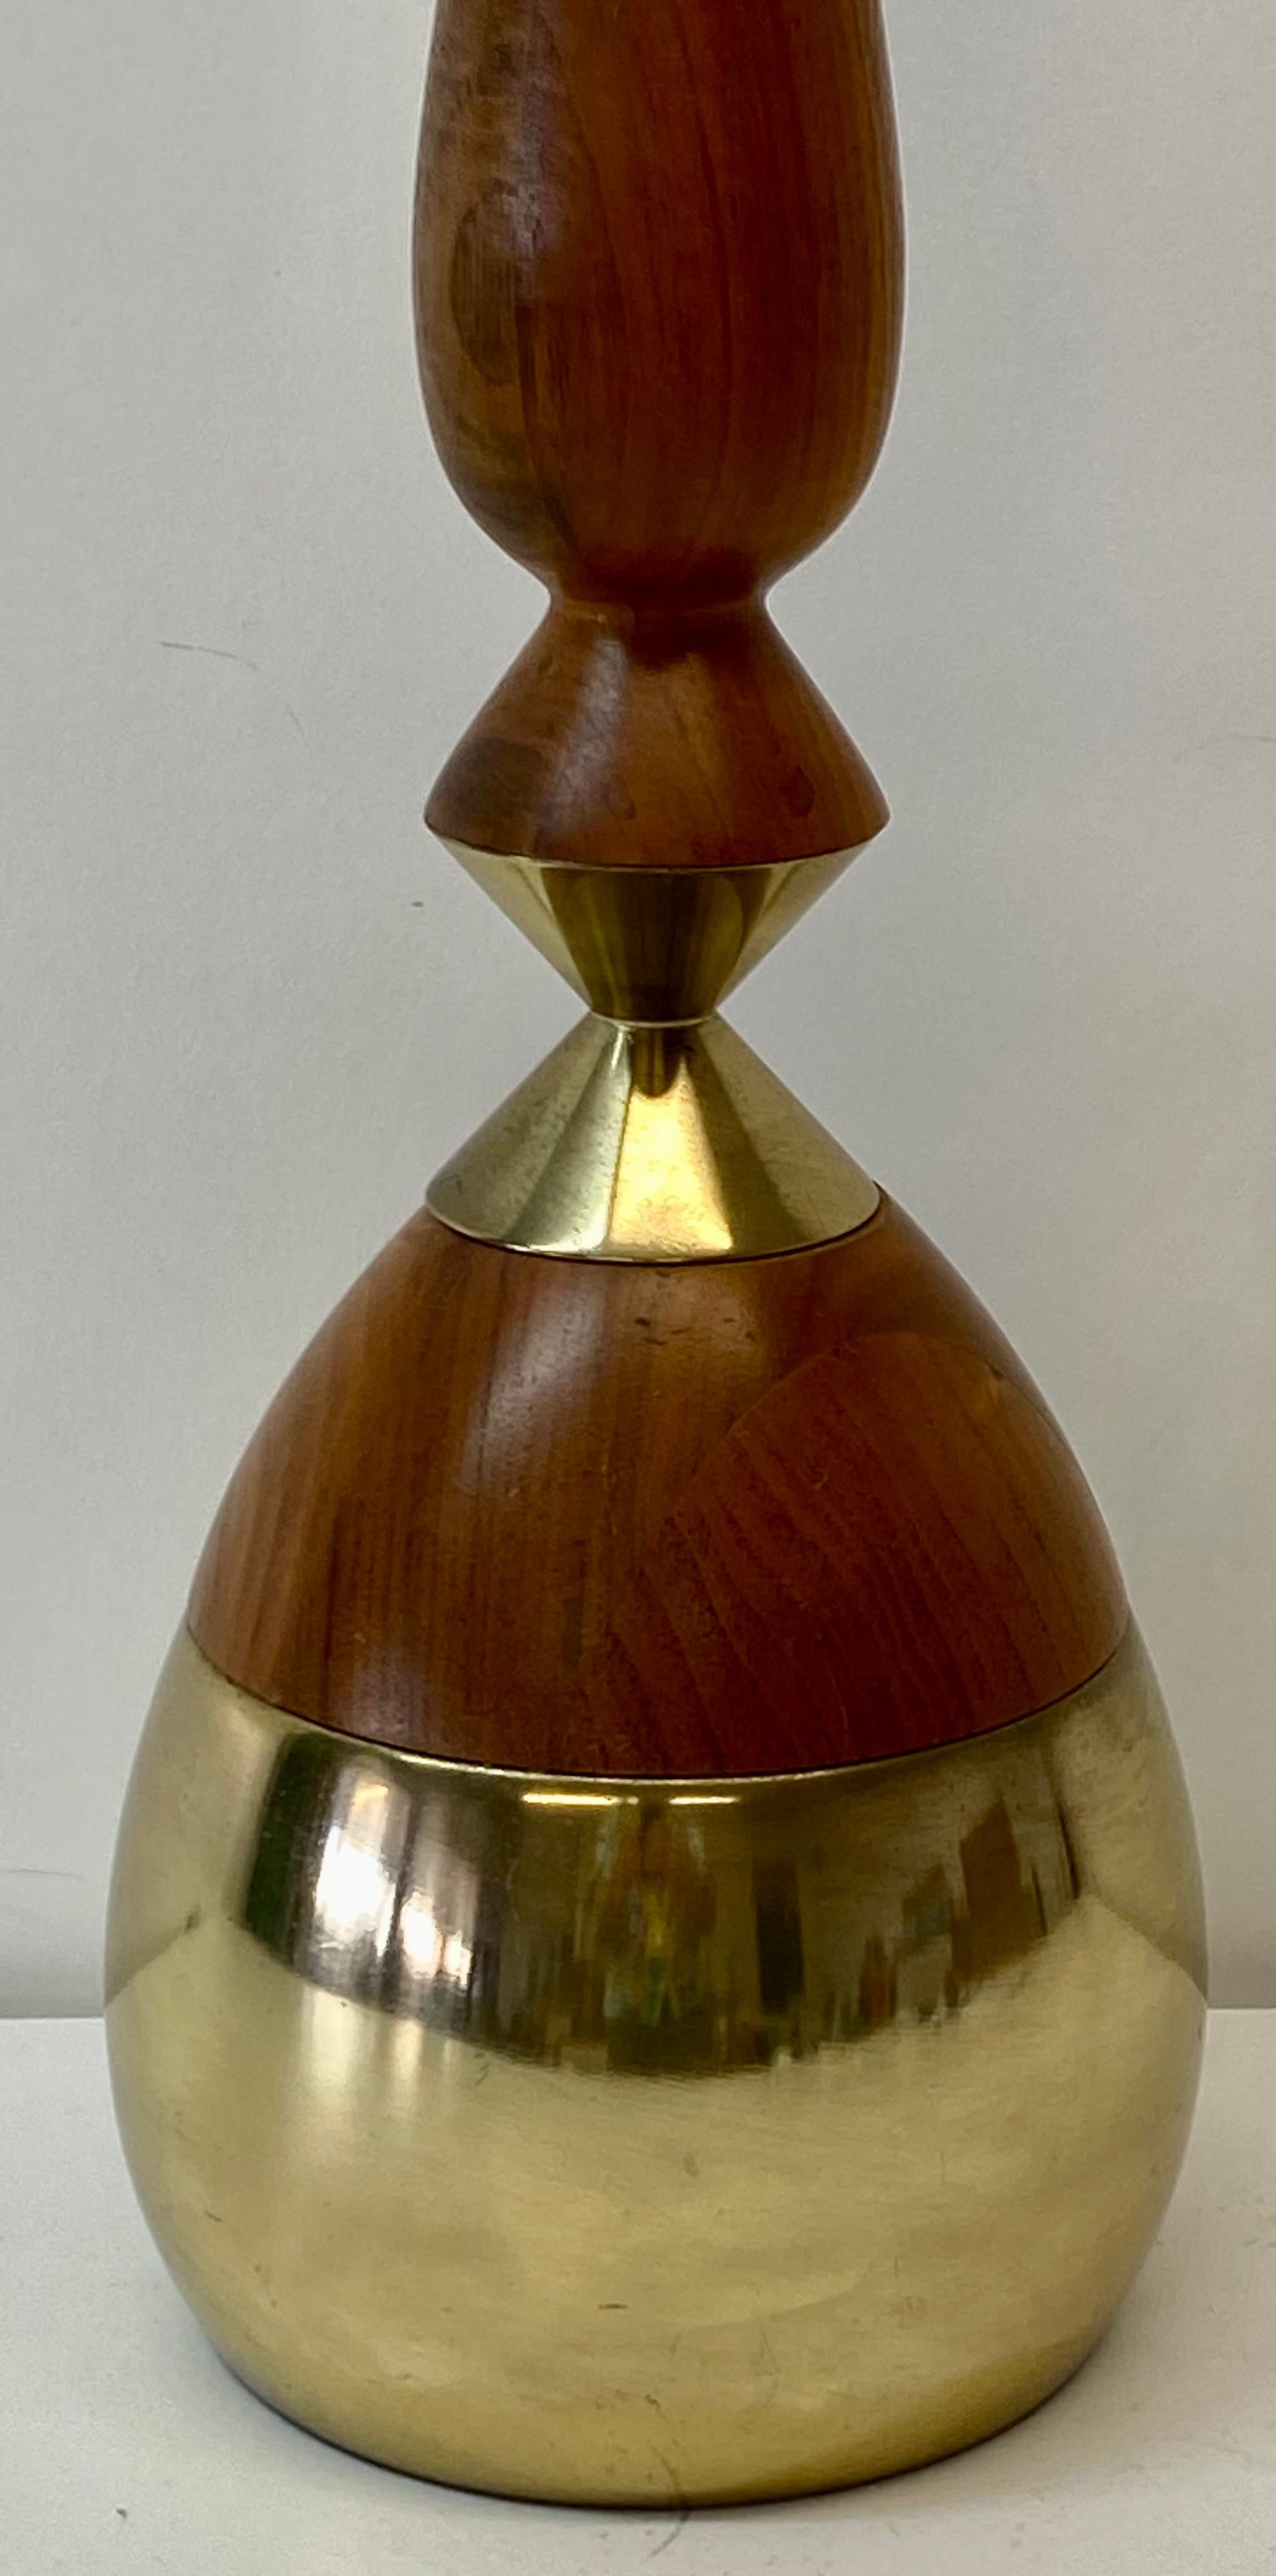 Moderne Tischlampe aus Messing und Nussbaumholz, um 1960

Zwiebelförmiger Messingsockel mit Nussbaumhals

Sehr schlank und elegant

Maße: 6